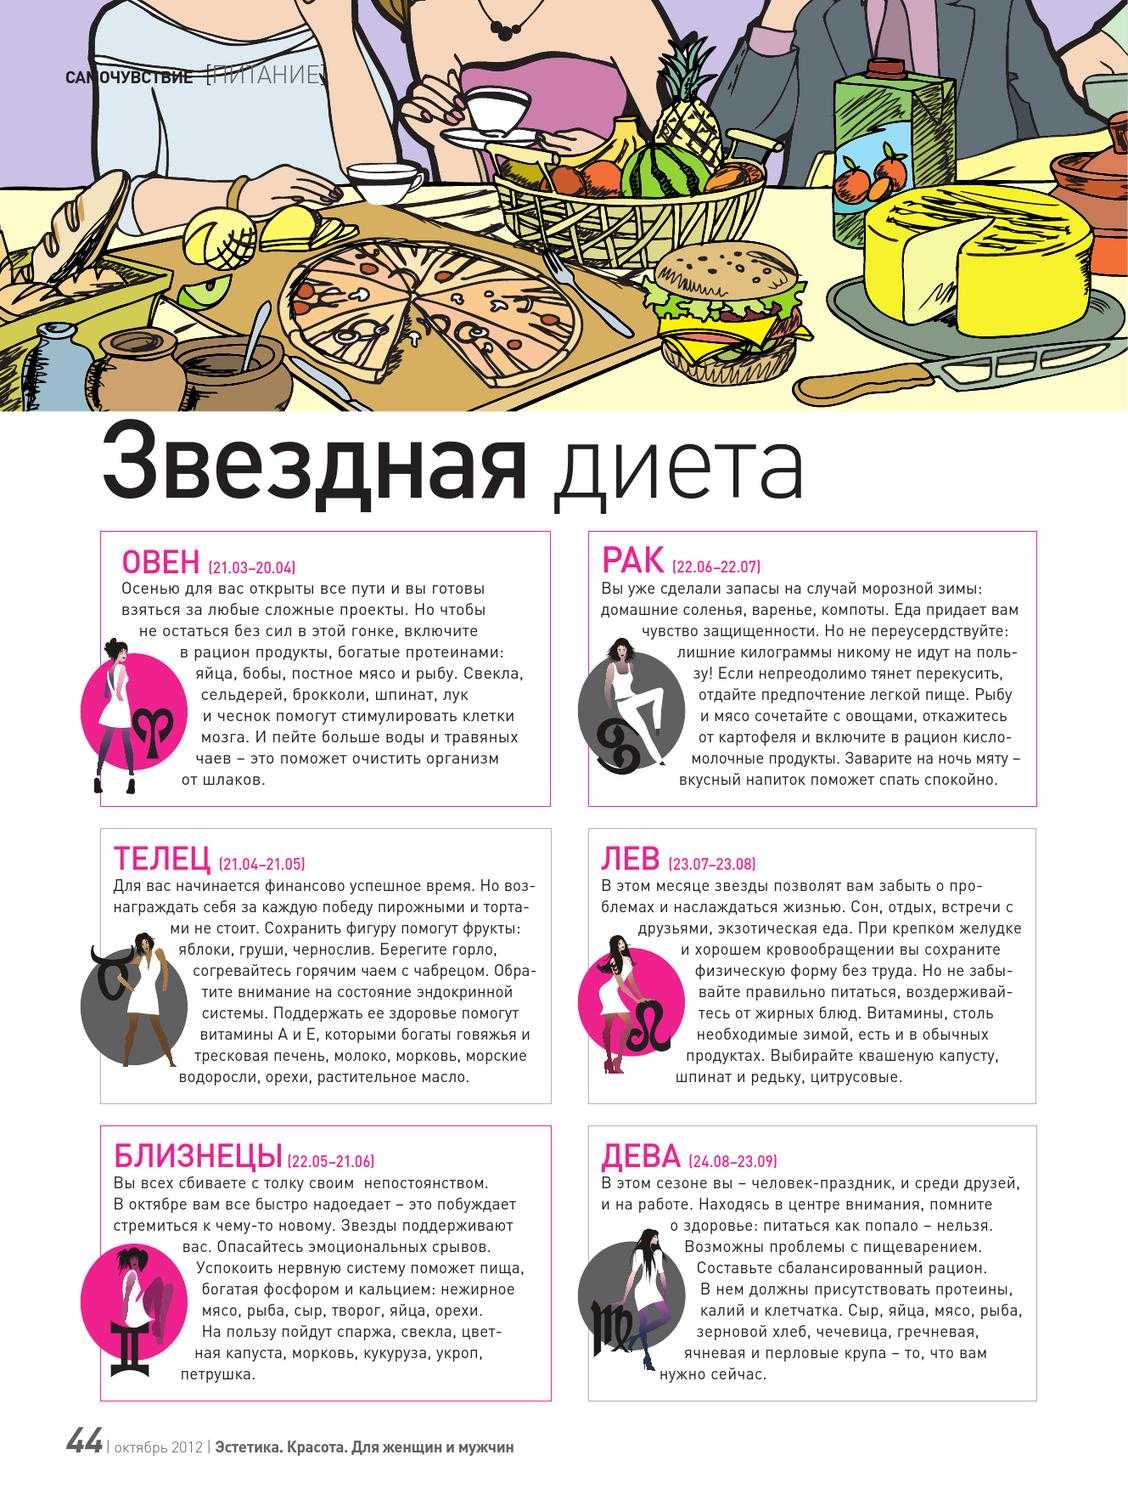 Диета по гороскопу: как худеют разные знаки зодиака | medisra.ru